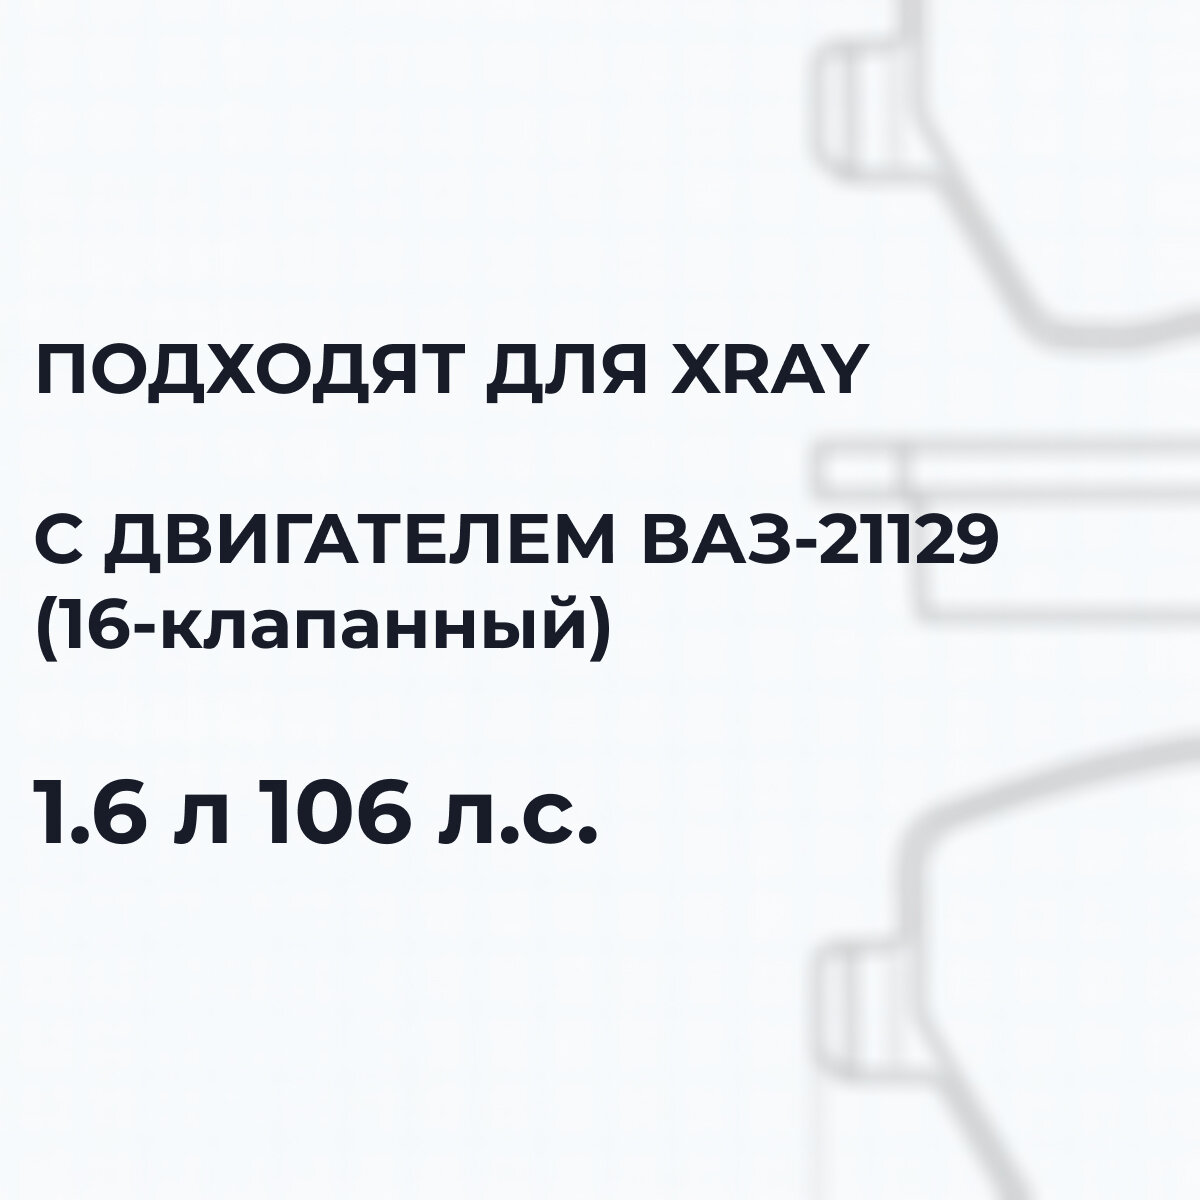 Тормозные колодки Лада XRAY 1.6 106 передние Lada Иксрей X-рей ВАЗ-21129 41060481r